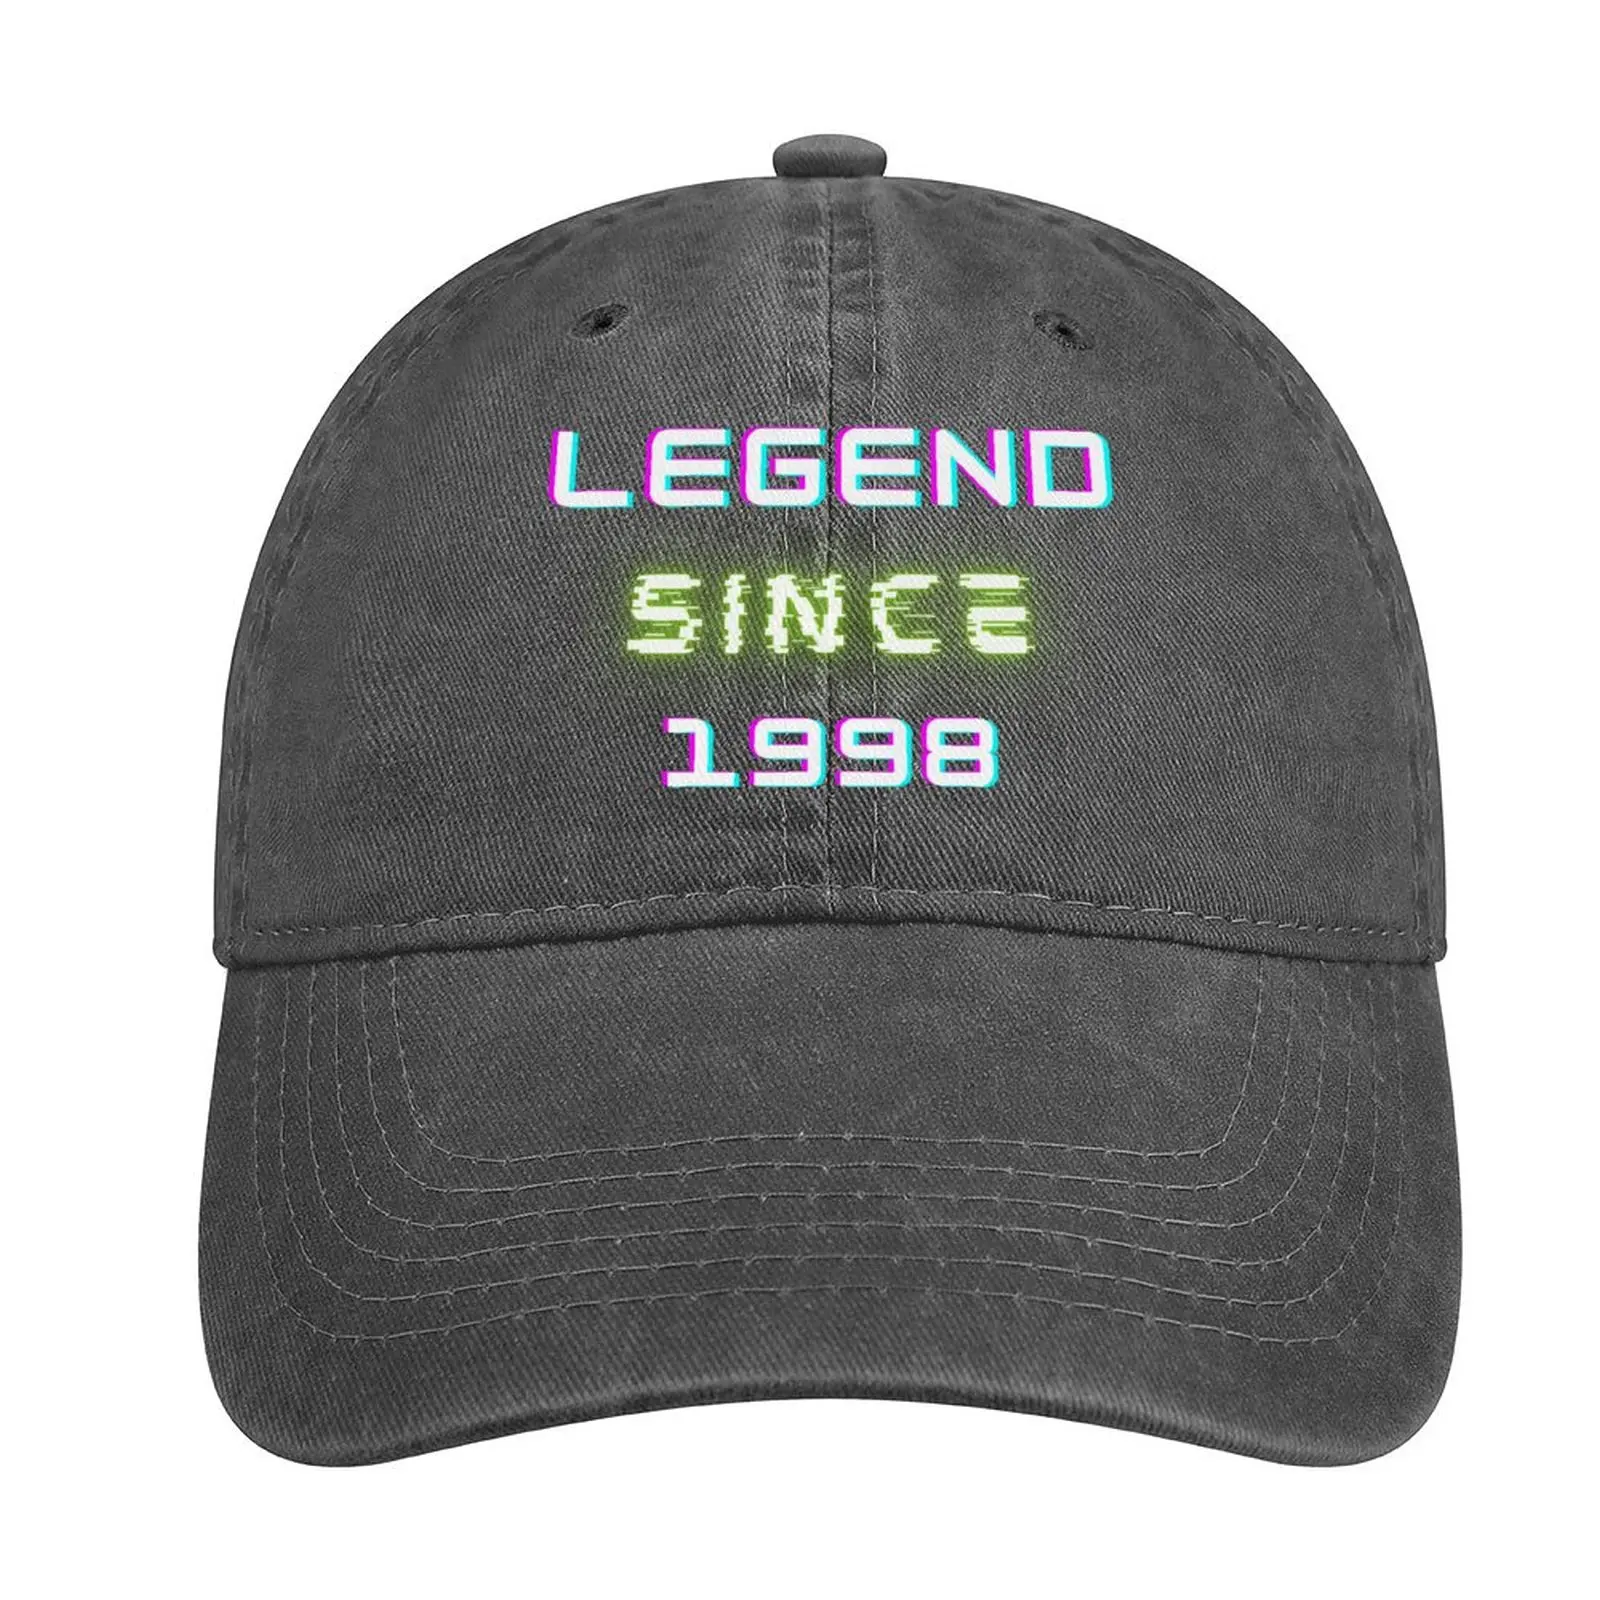 

Legend since 1998 25th Birthday gift Sentence Cowboy Hat derby hat dad hat Women Beach Fashion Men'S